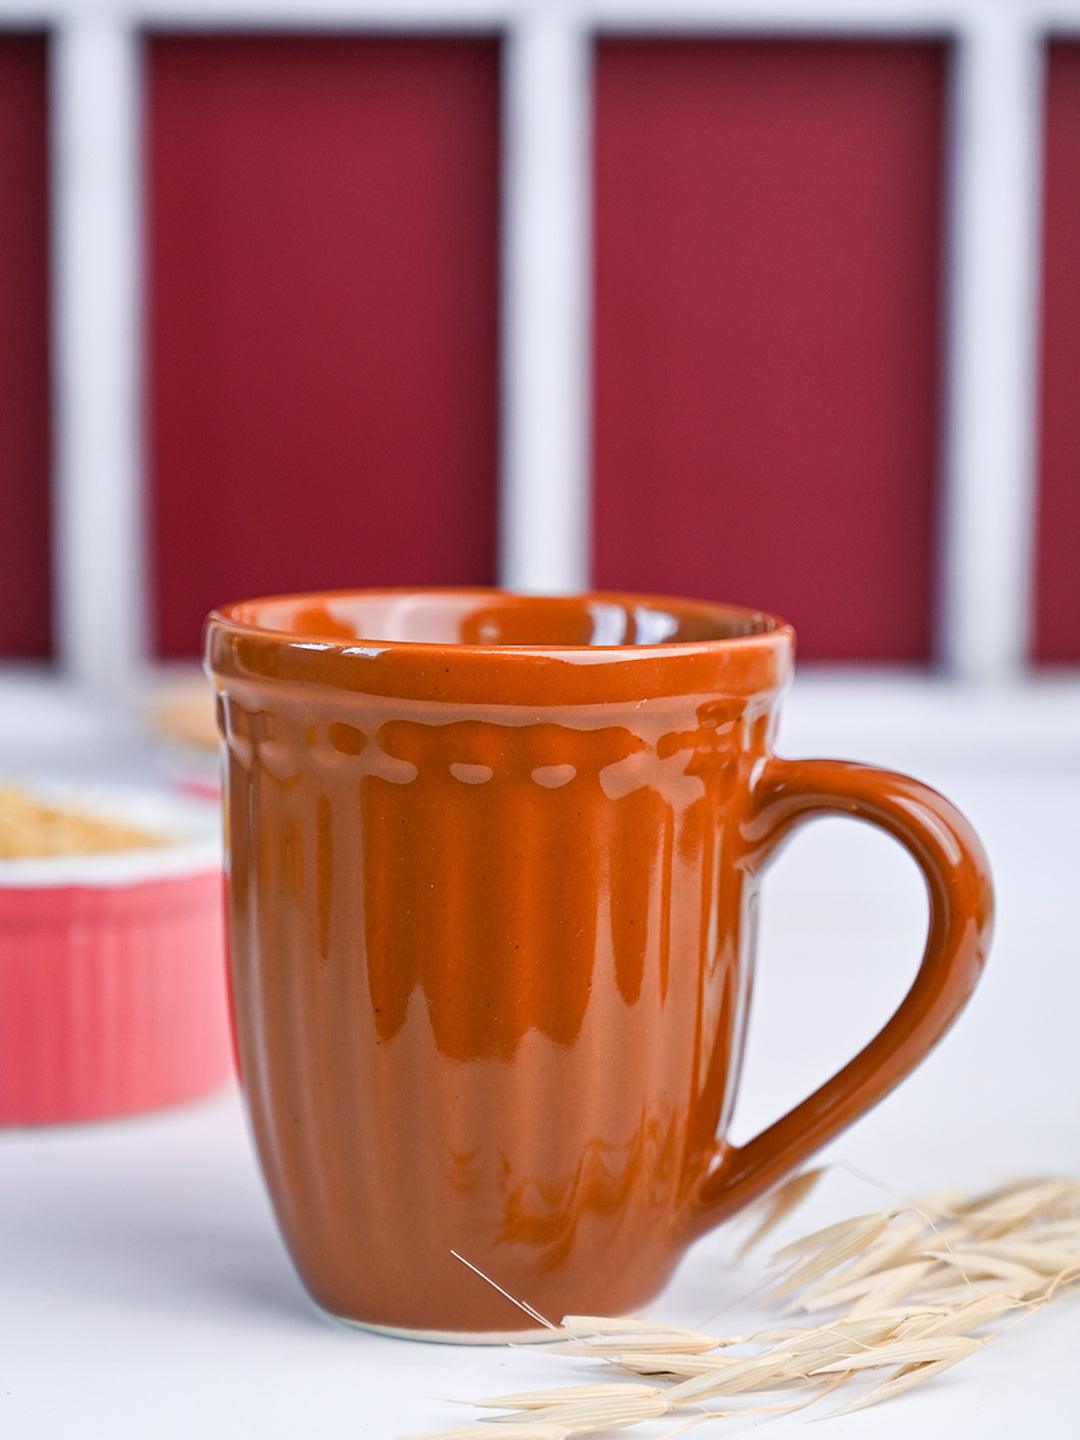 VON CASA Ceramic Coffee & Tea Mug - 300 Ml, Brown - MARKET 99